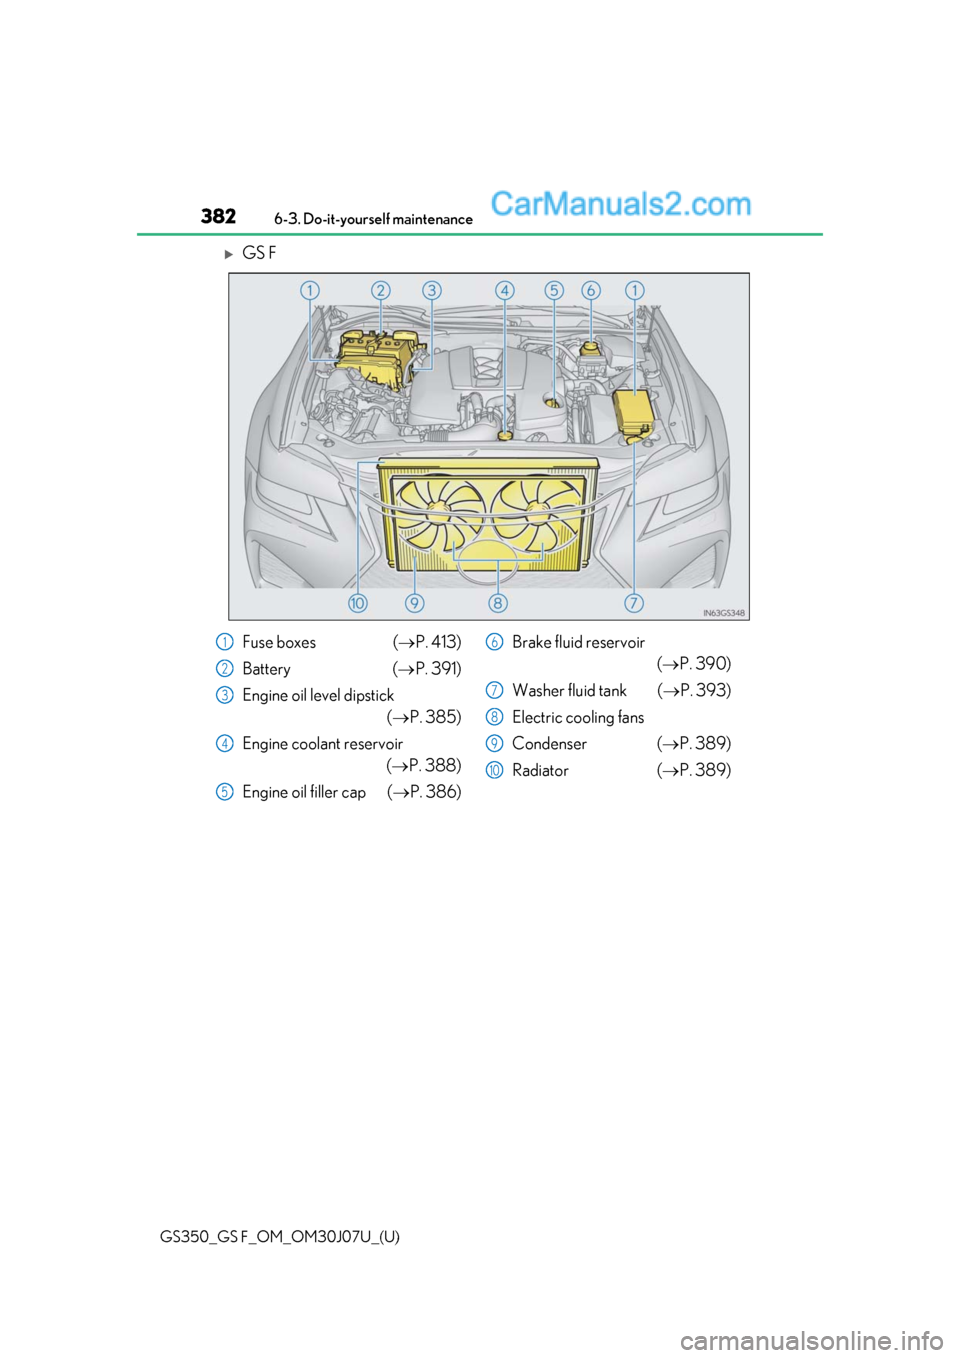 Lexus GS350 2020 User Guide 382
GS350_GS F_OM_OM30J07U_(U)6-3. Do-it-yourself maintenance
GS F
Fuse boxes (
P. 413)
Battery ( P. 391)
Engine oil level dipstick (P. 385)
Engine coolant reservoir (P. 388)
Engine oil